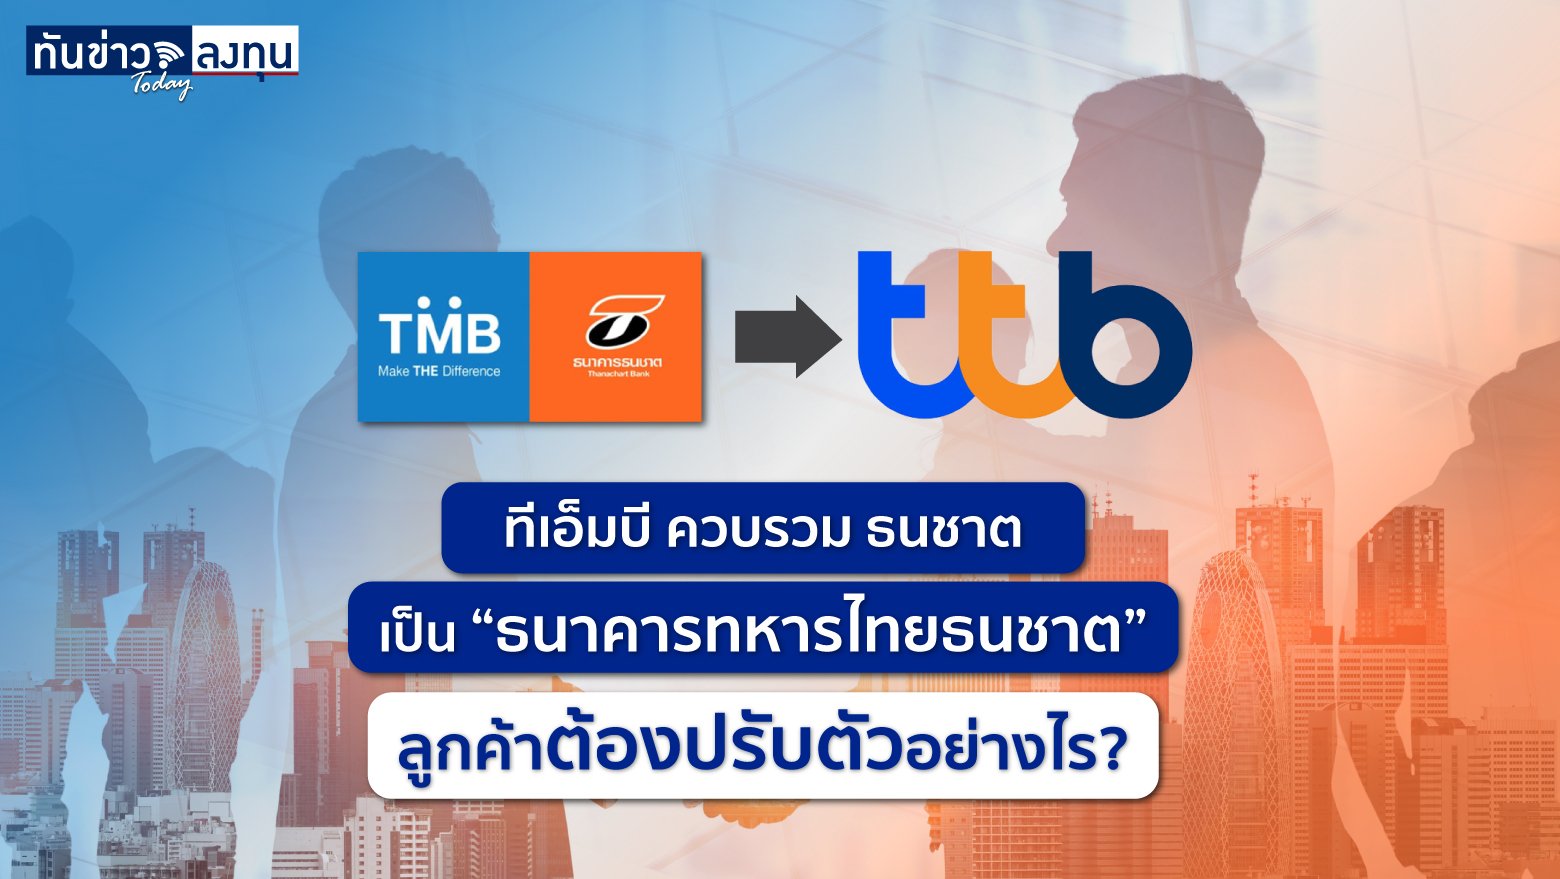  ทีเอ็มบี ควบรวม ธนชาต เป็น “ธนาคารทหารไทยธนชาต” ลูกค้าต้องปรับตัวอย่างไร?